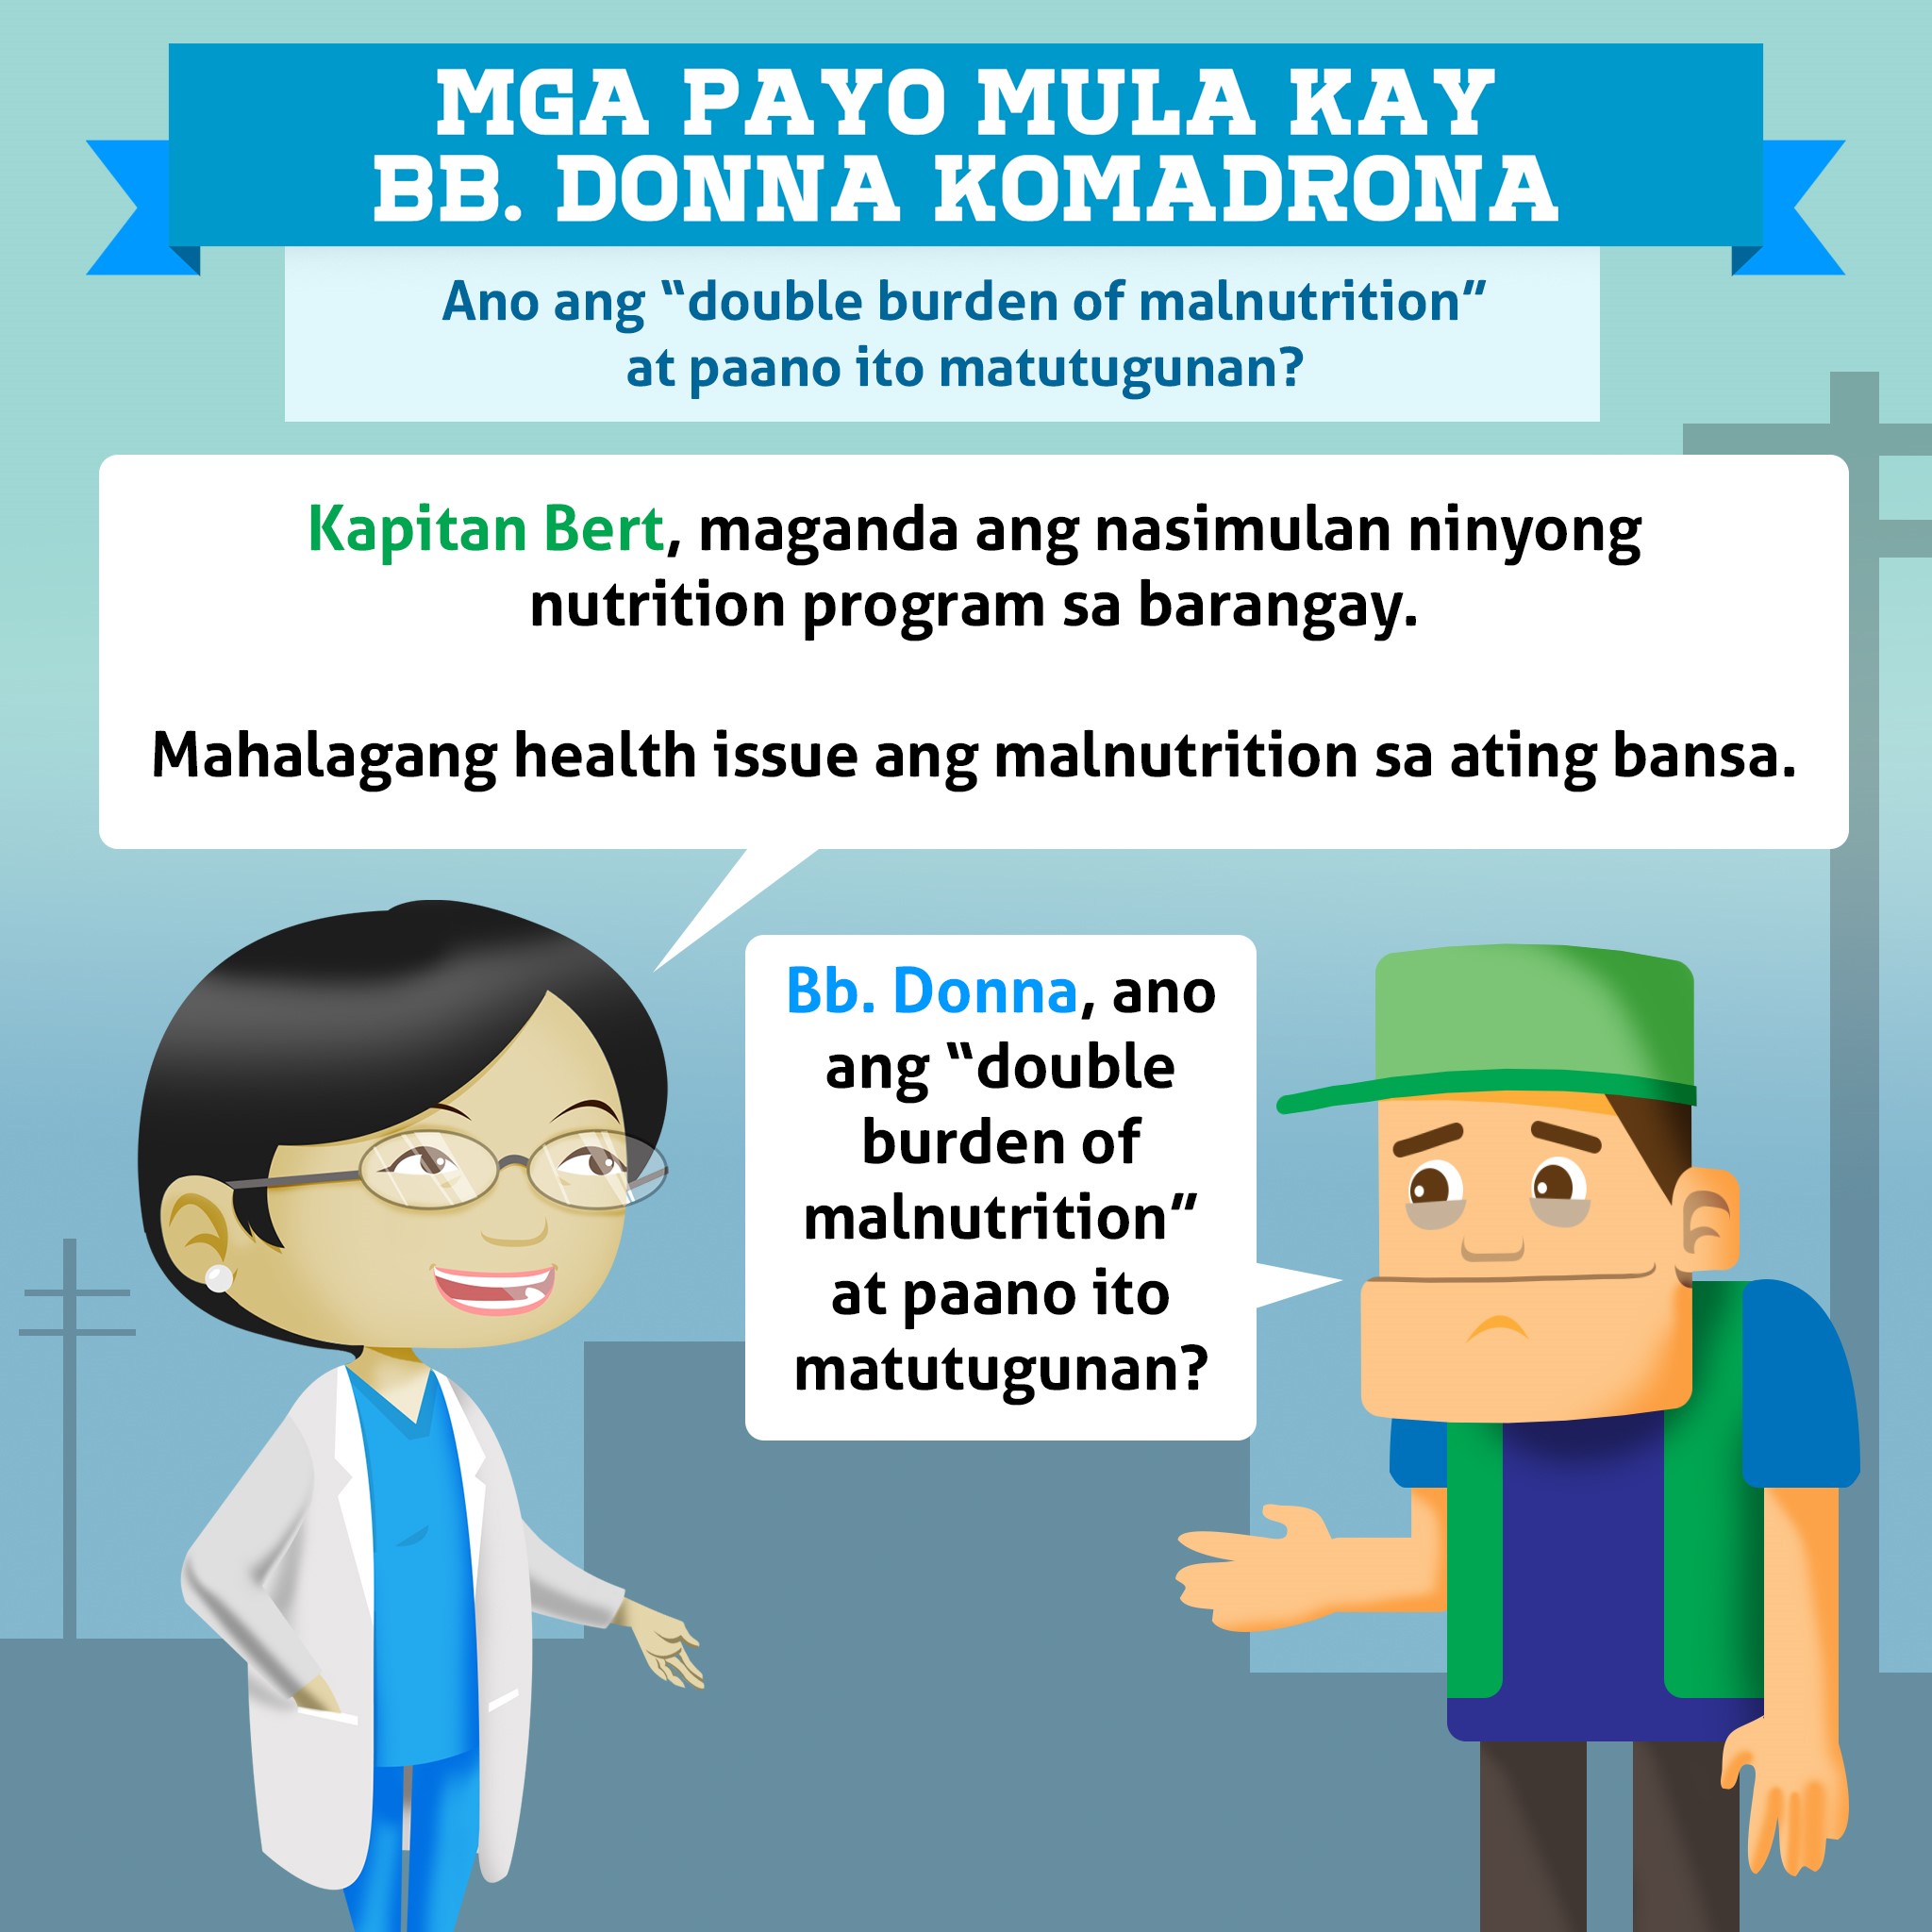 Ano ang "double burden of malnutrition" at paano ito matutugunan?